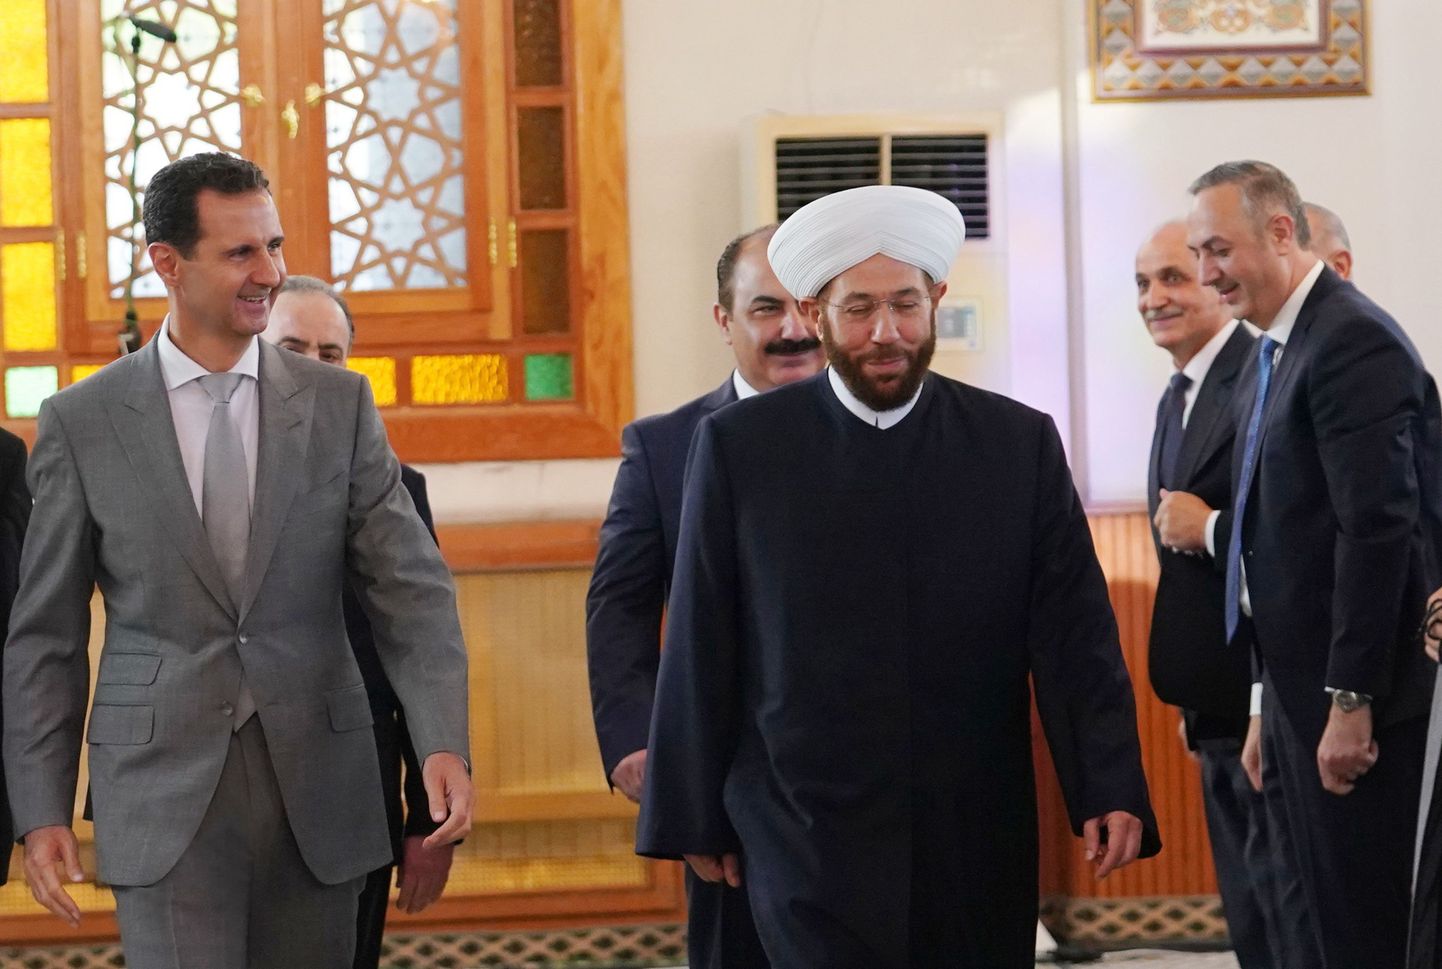 Süüria president Bashar al-Assad (vasakul) ja suurmufti Ahmad Badreddin Hassoun (keskel).